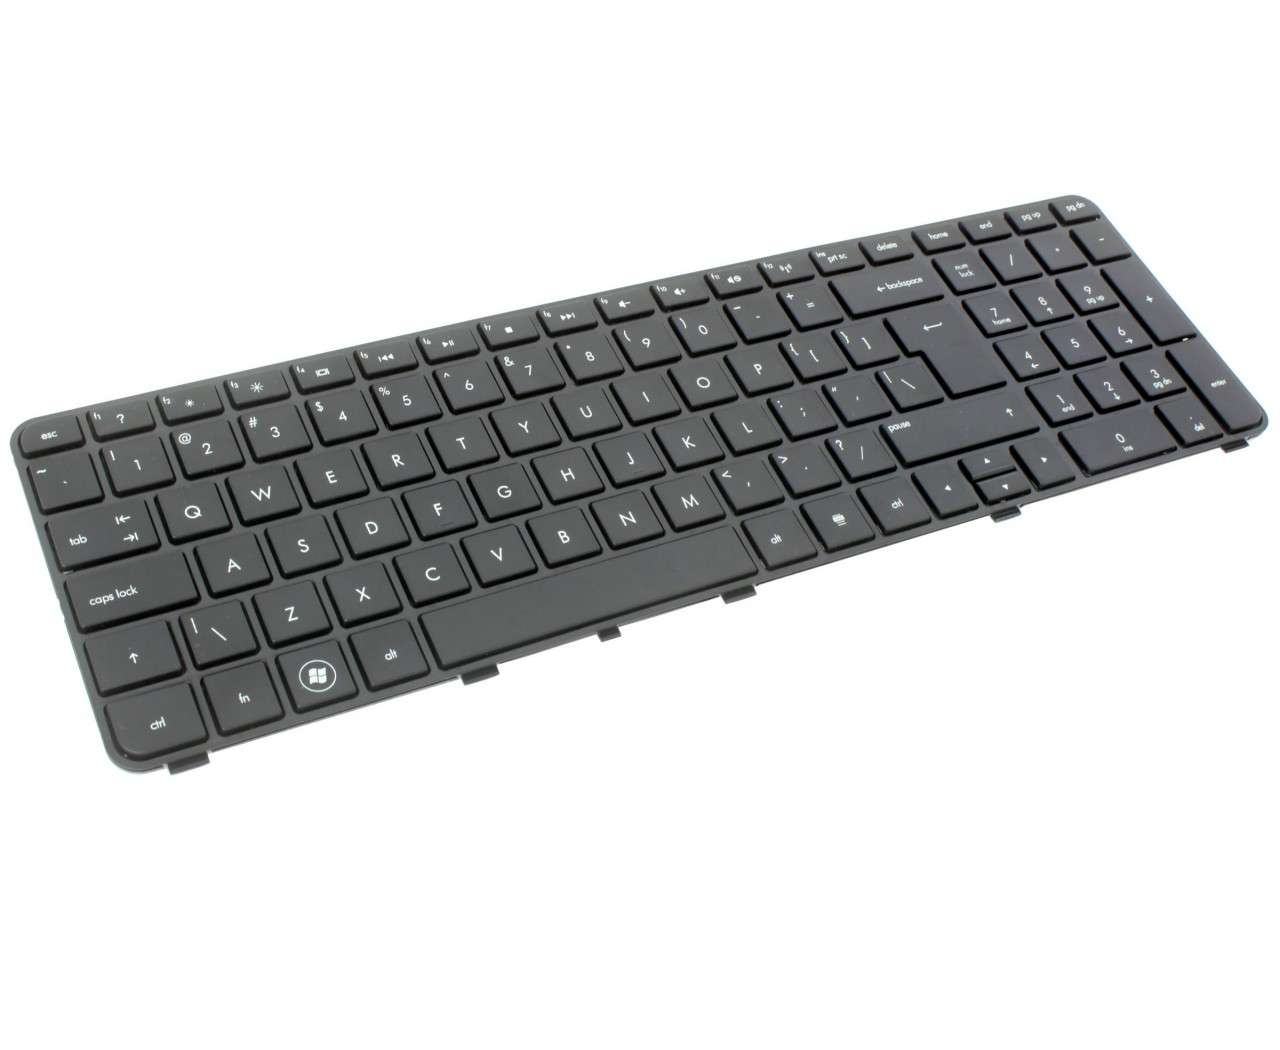 Tastatura HP AELX9U00210